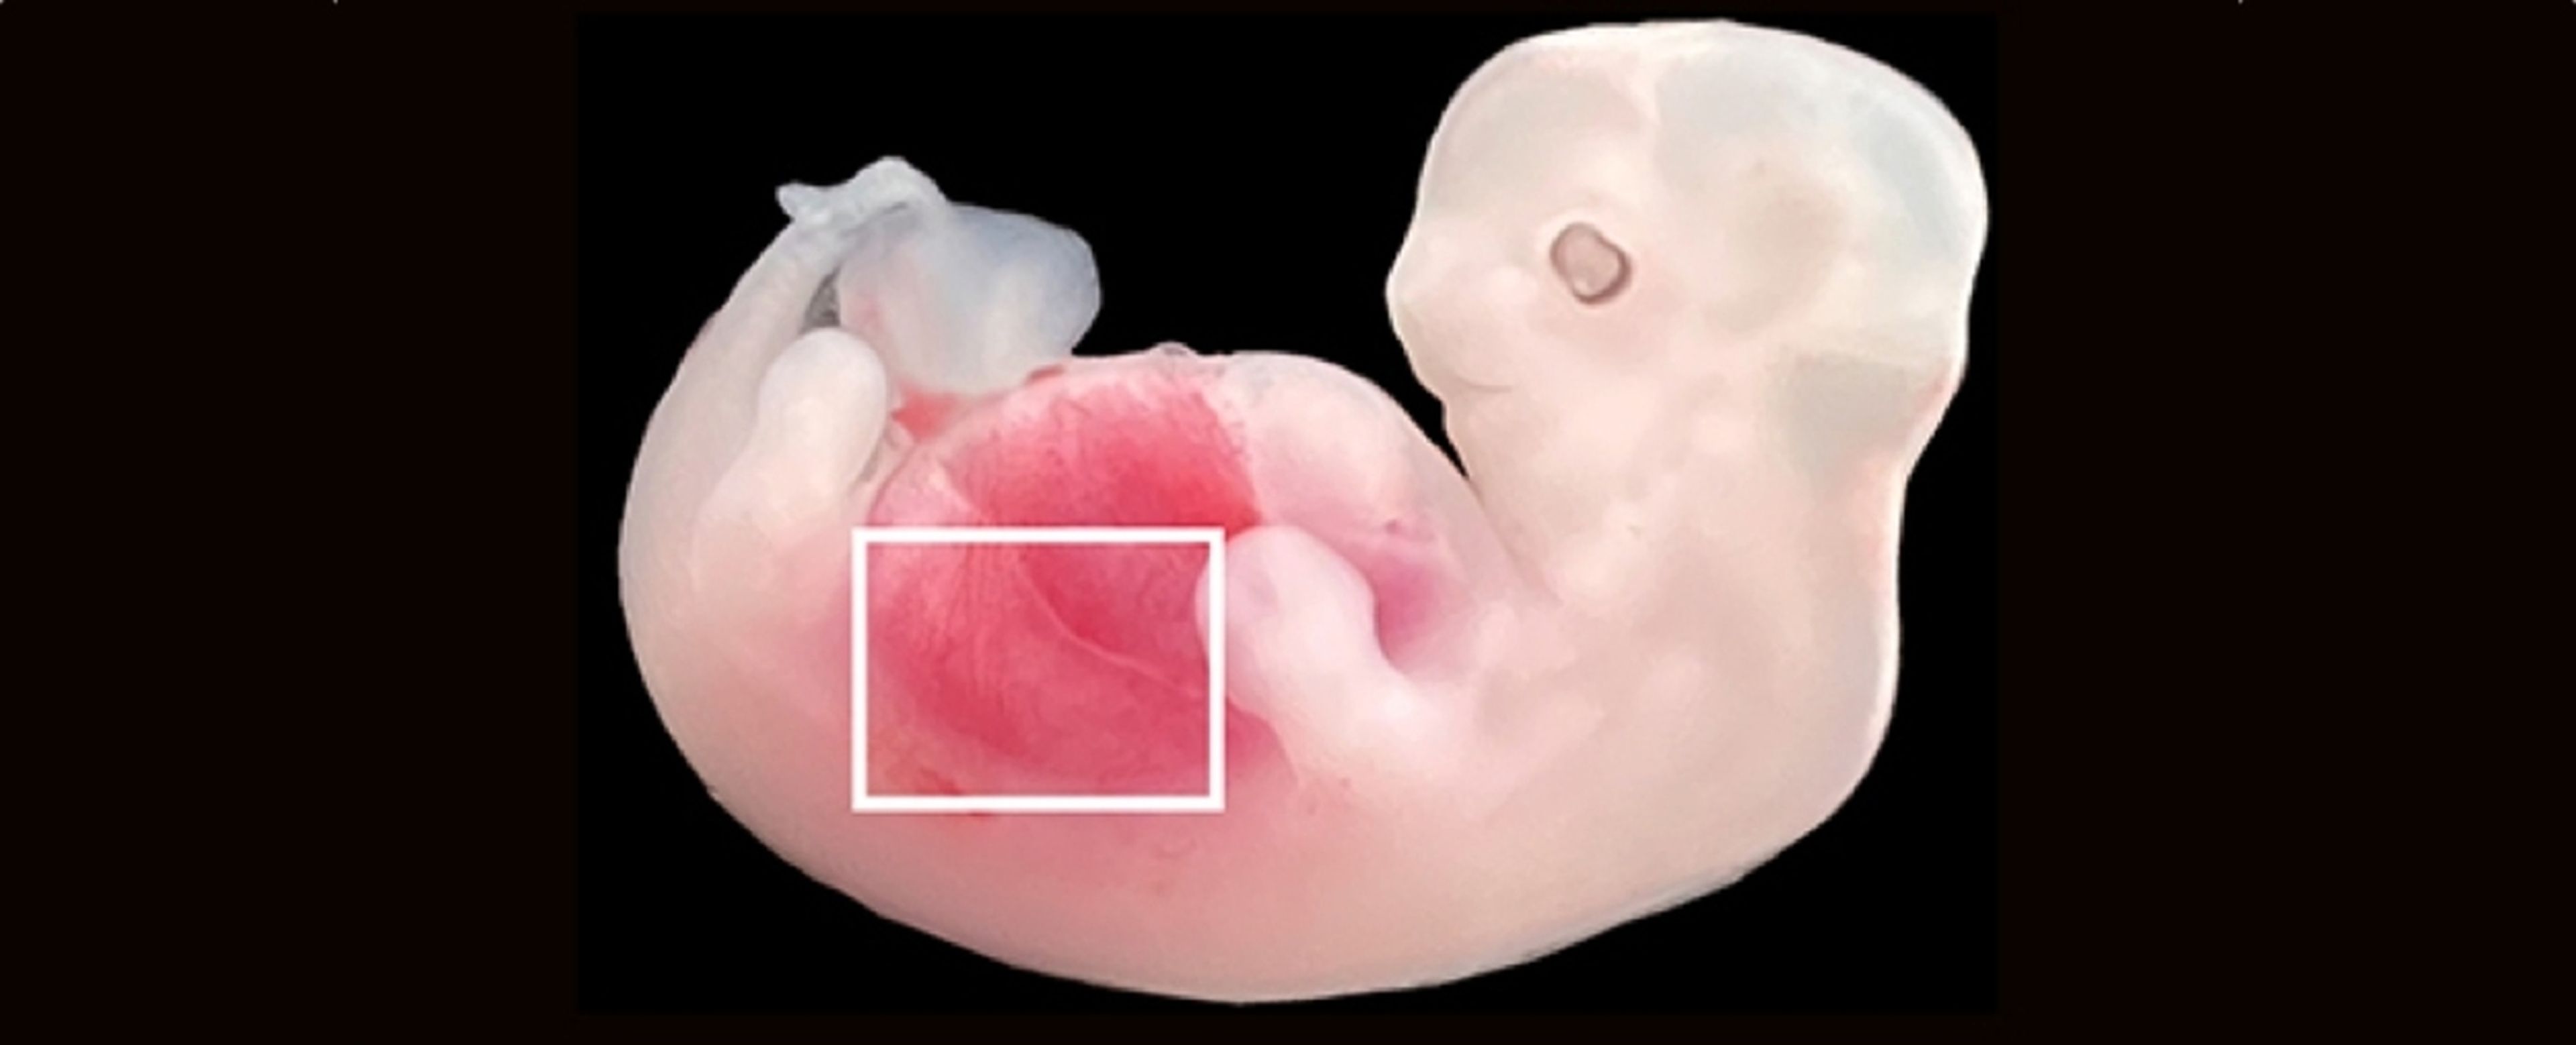 Riñones cultivados en embriones de cerdo